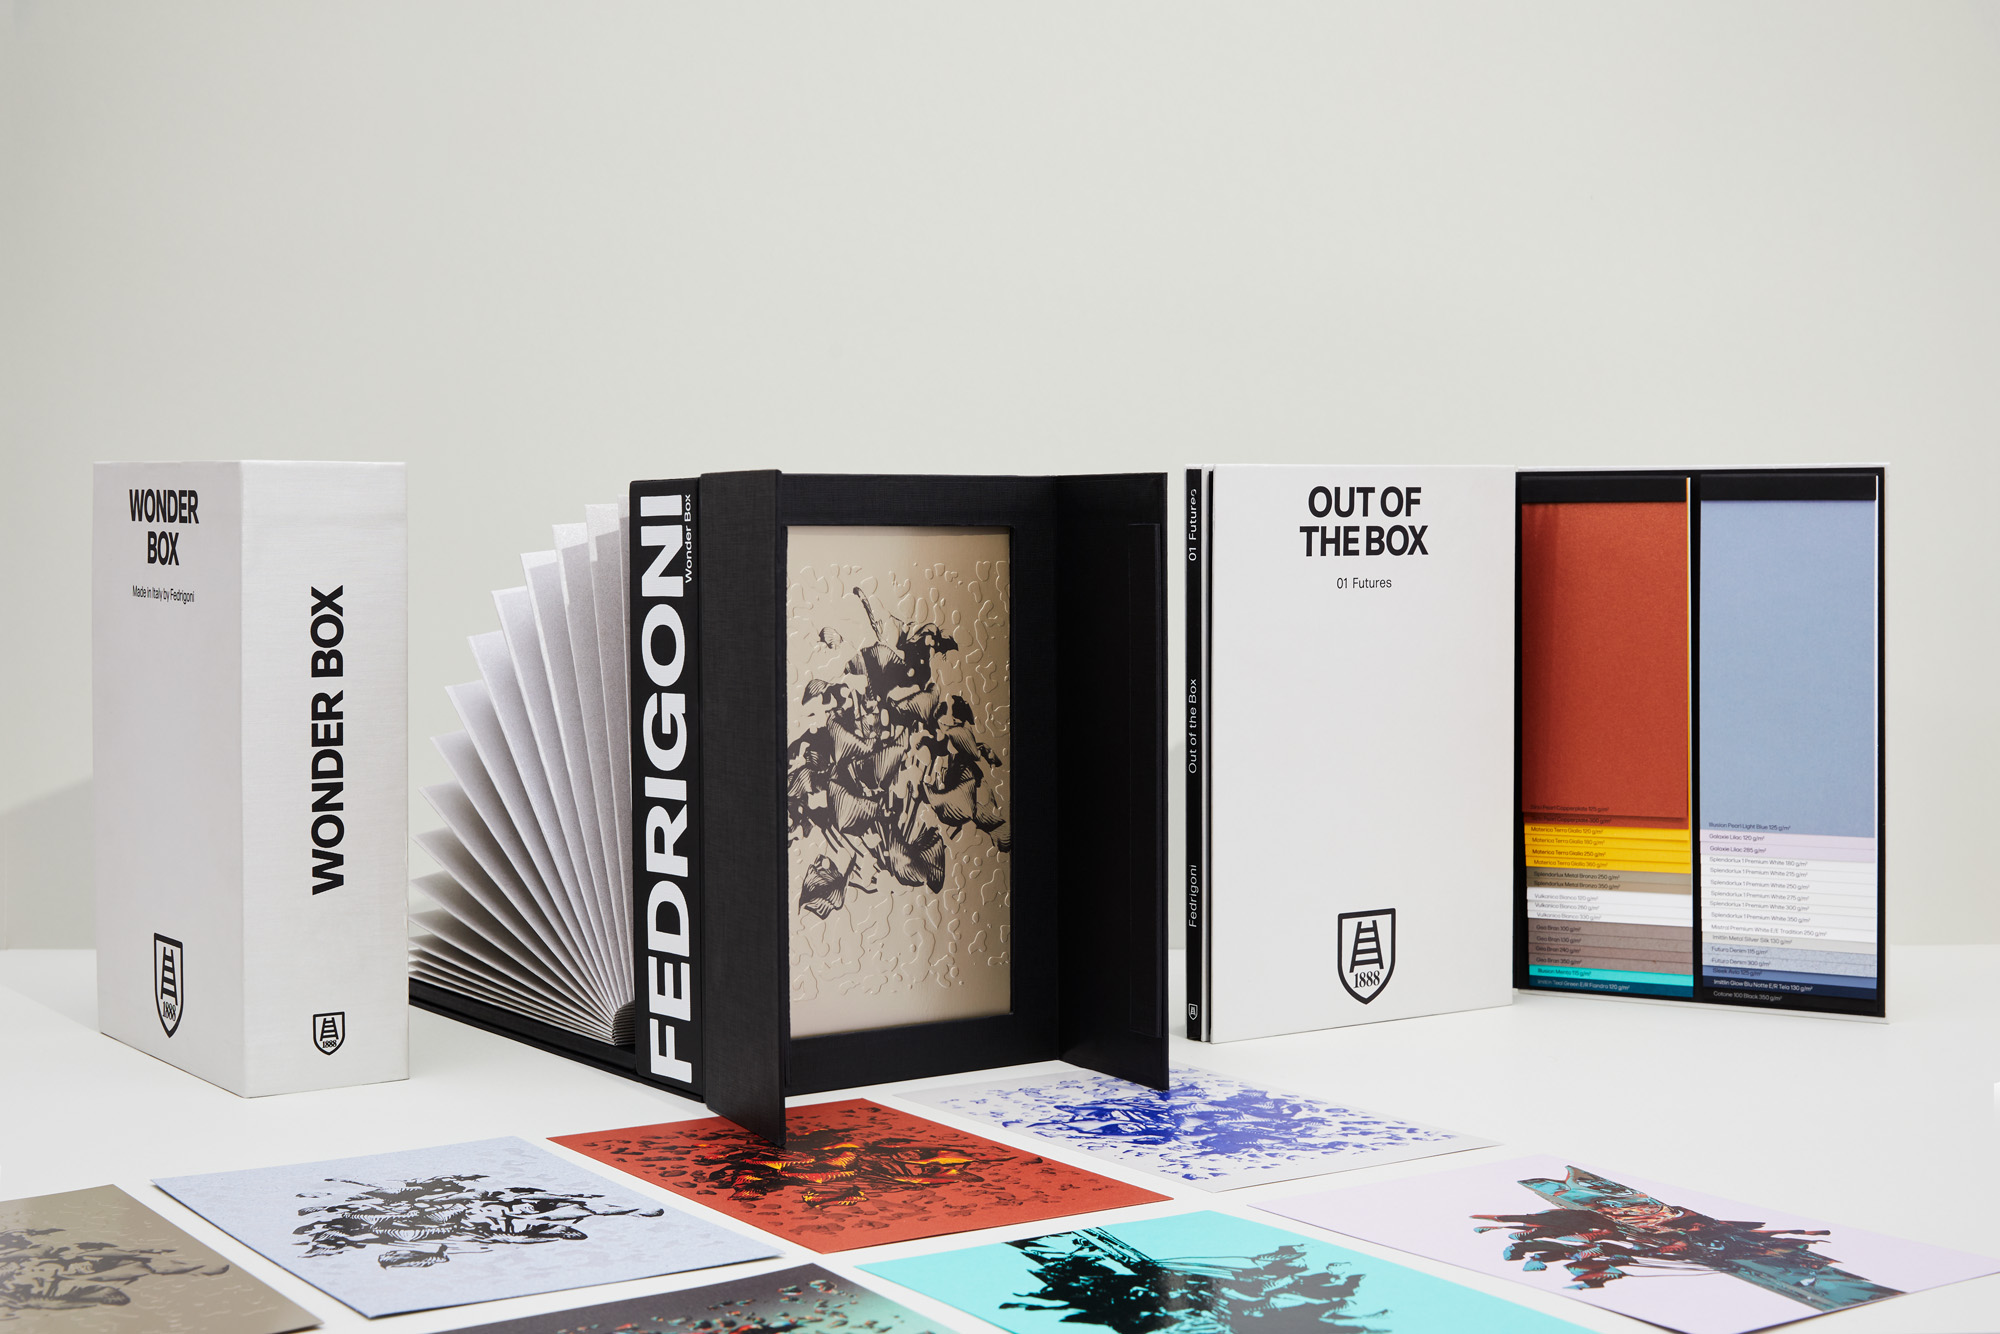 Descubra a Futures, uma coleção de papéis apresentada na Out of the Box e na Wonder Box